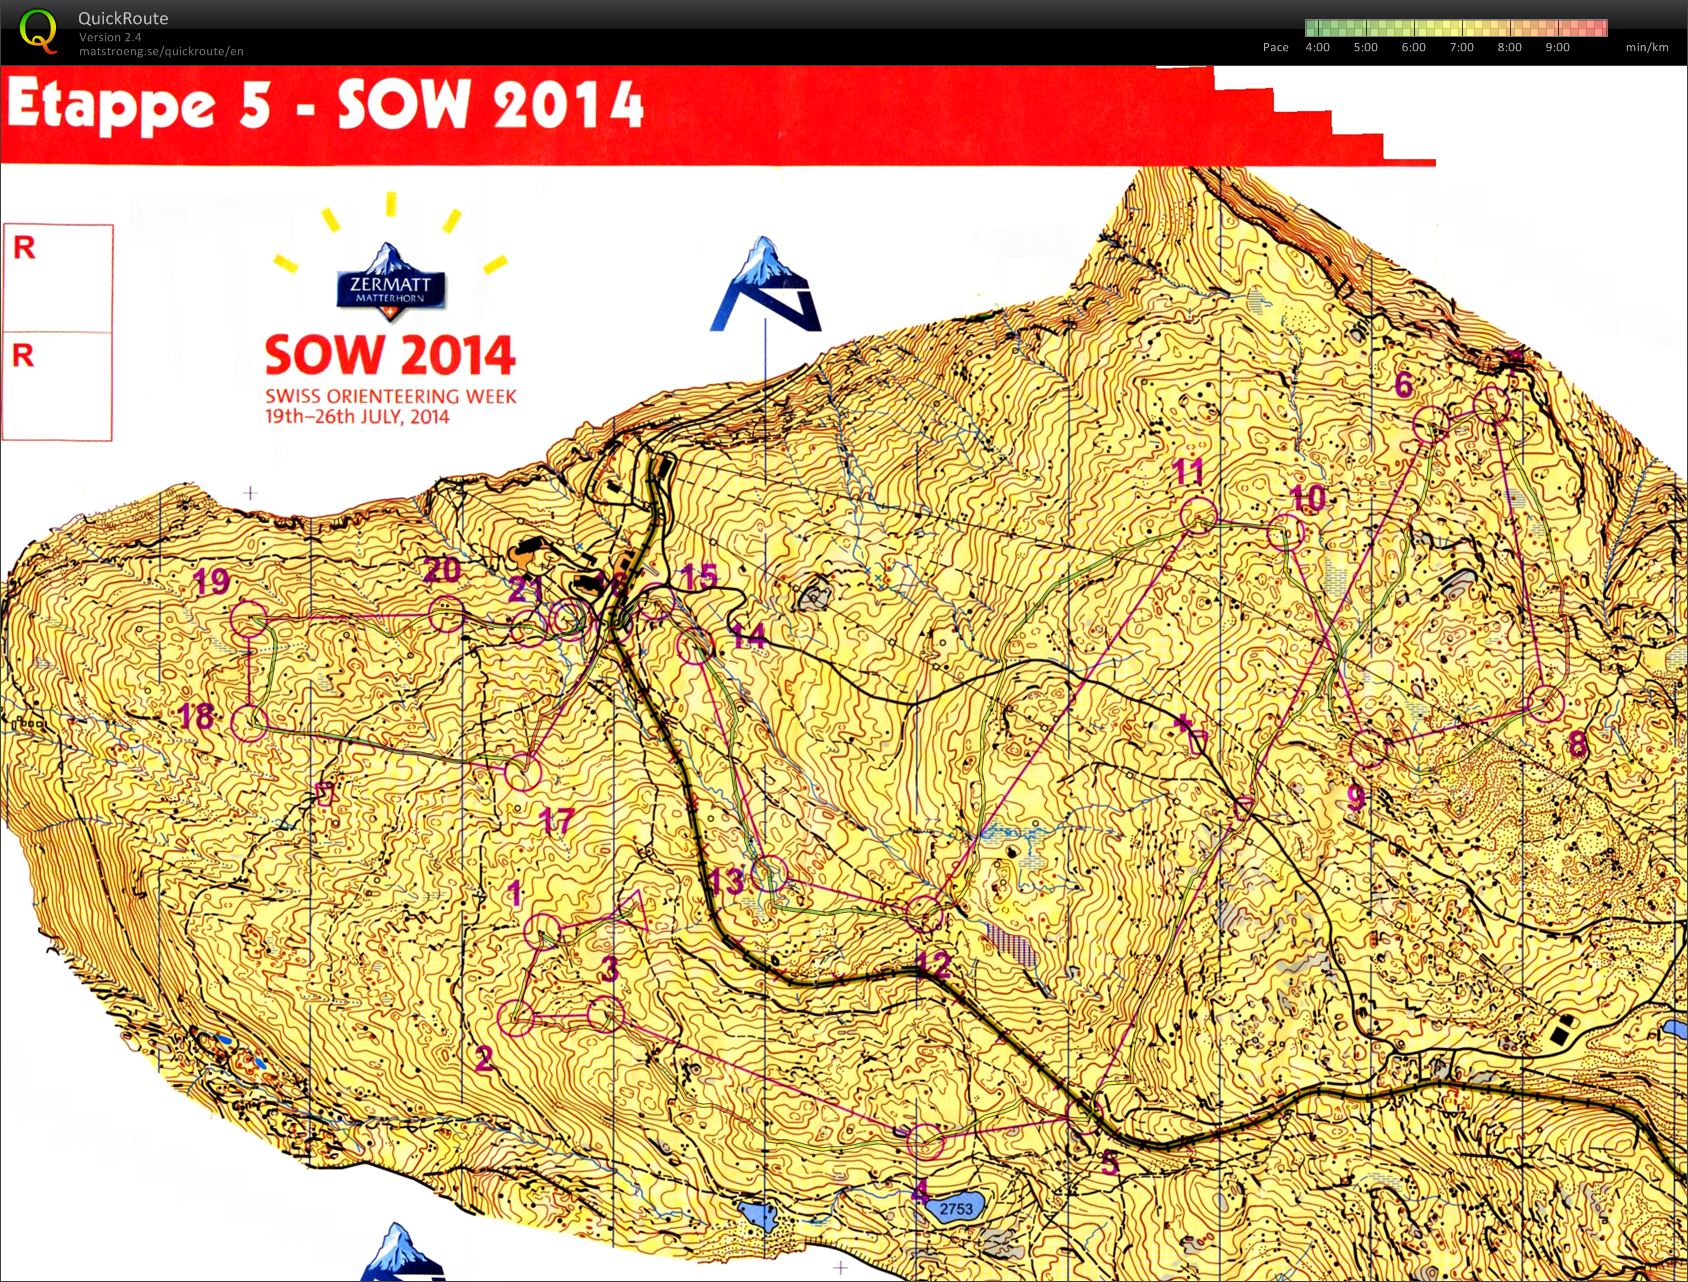 Swiss O week day 3 (Stage 5) (22-07-2014)